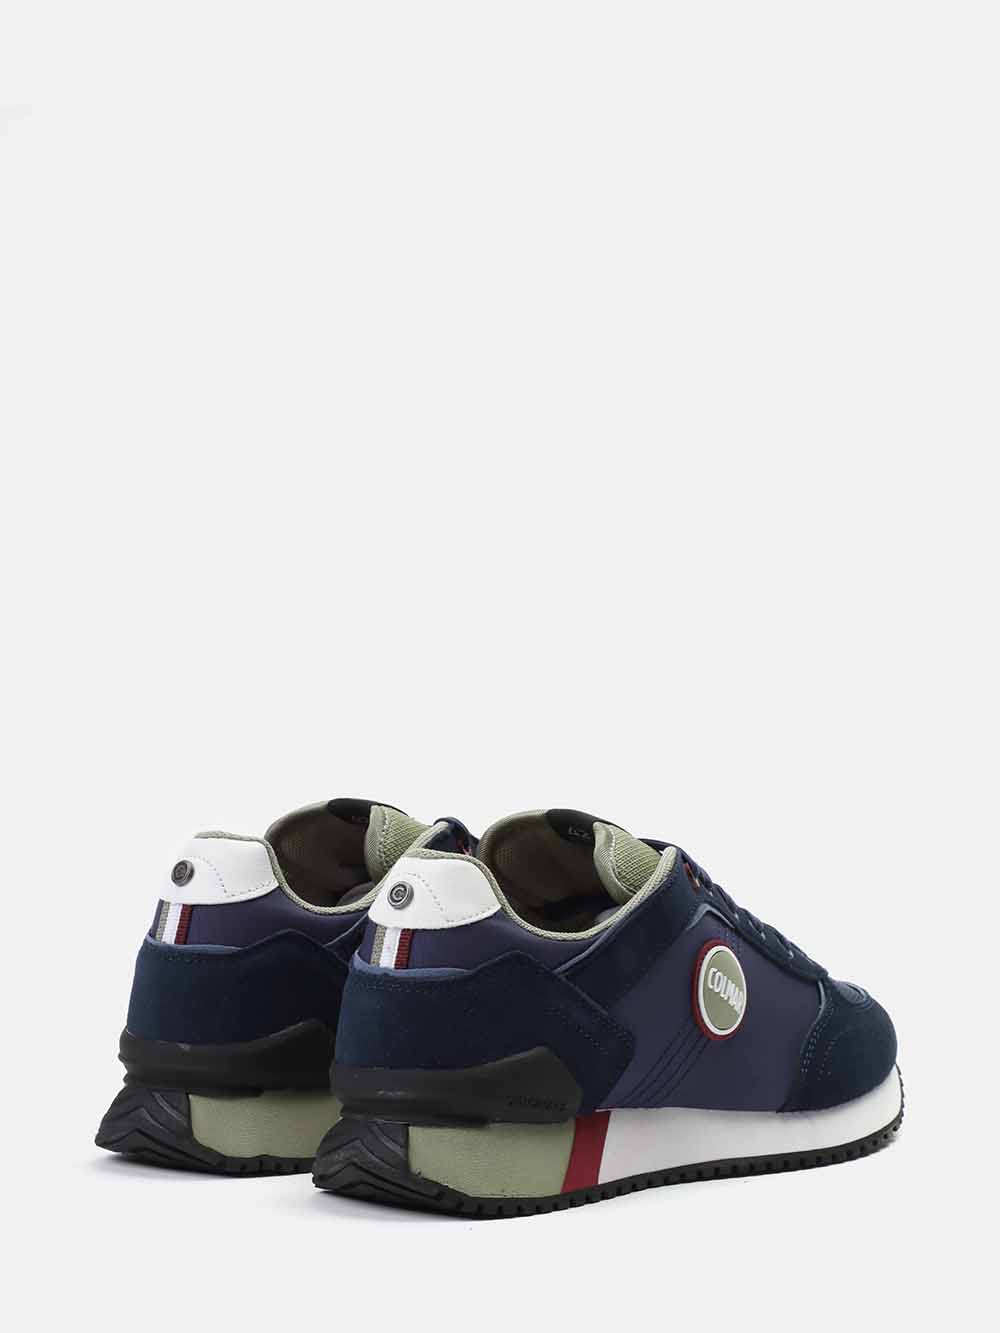 Navy Blue - Green - Burgundy Sneakers